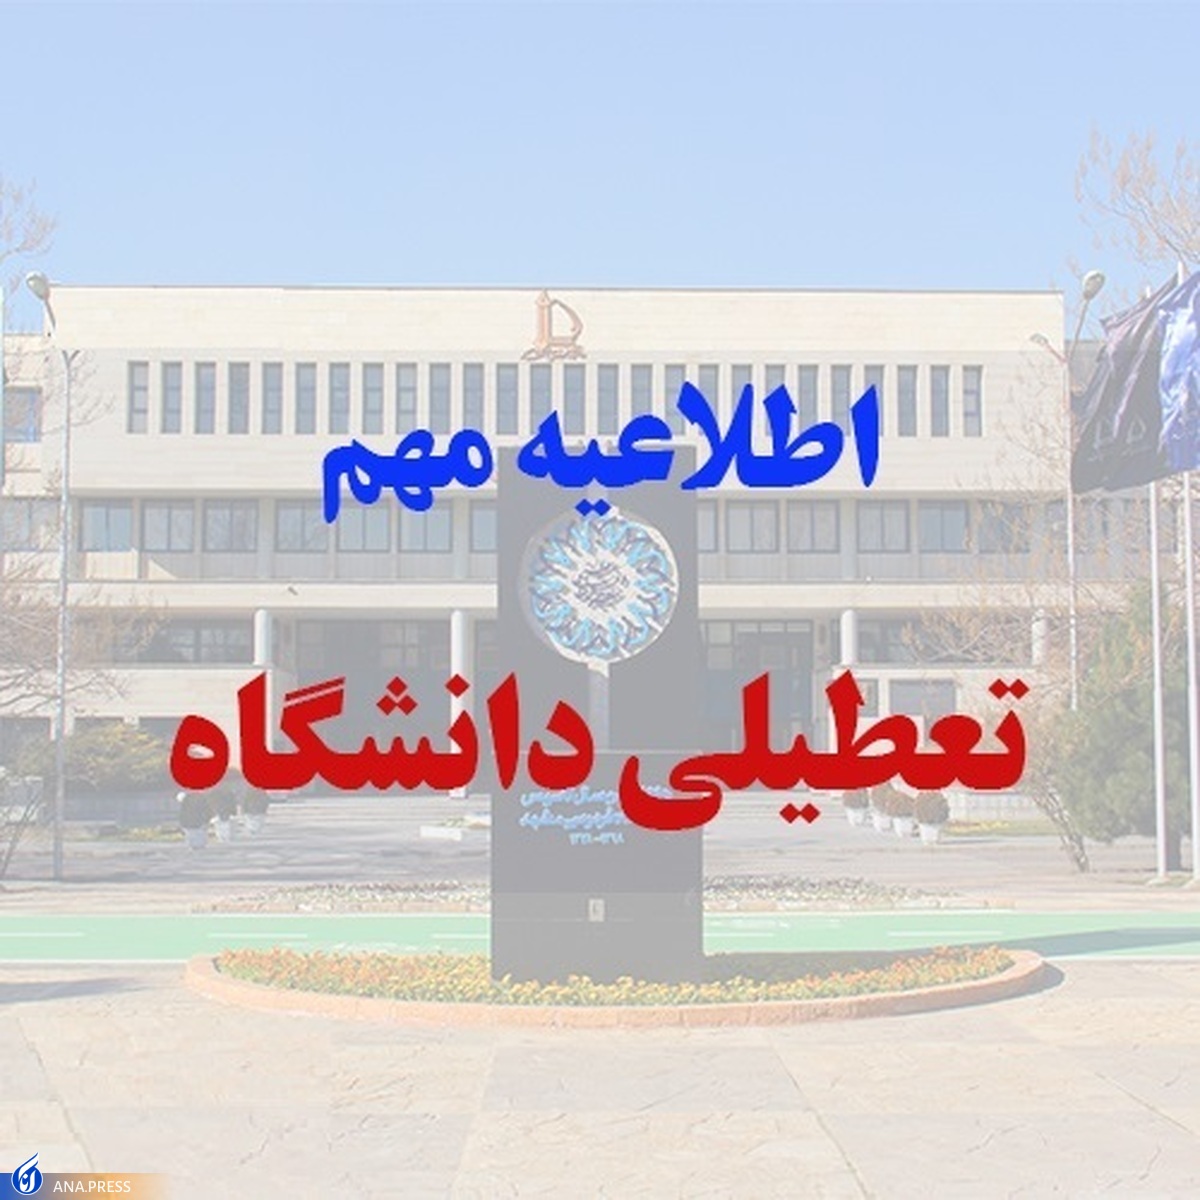 سرما دانشگاه آزاد اسلامی مشهد را تعطیل کرد